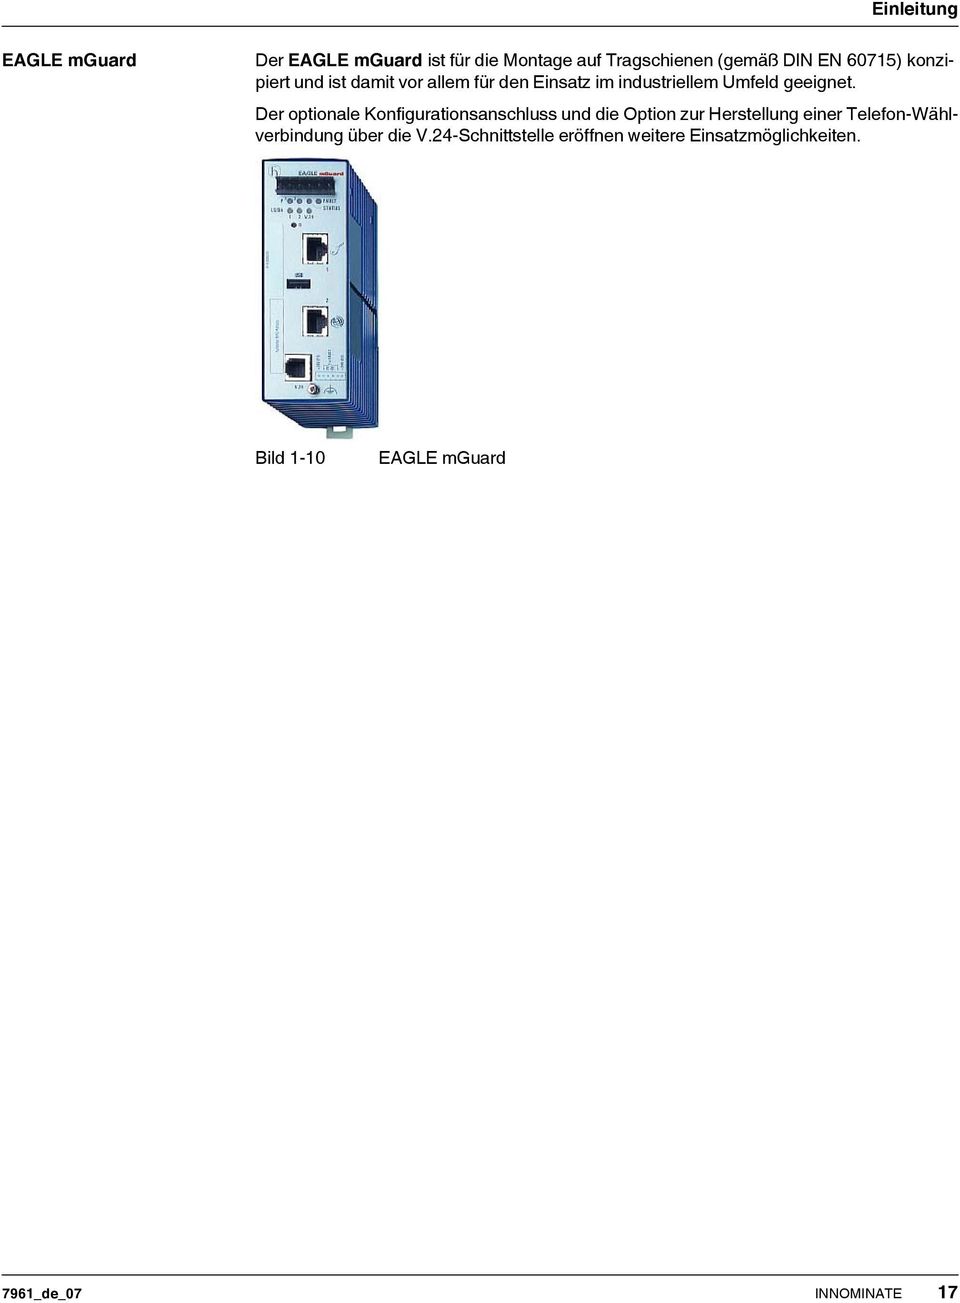 Der optionale Konfigurationsanschluss und die Option zur Herstellung einer Telefon-Wählverbindung